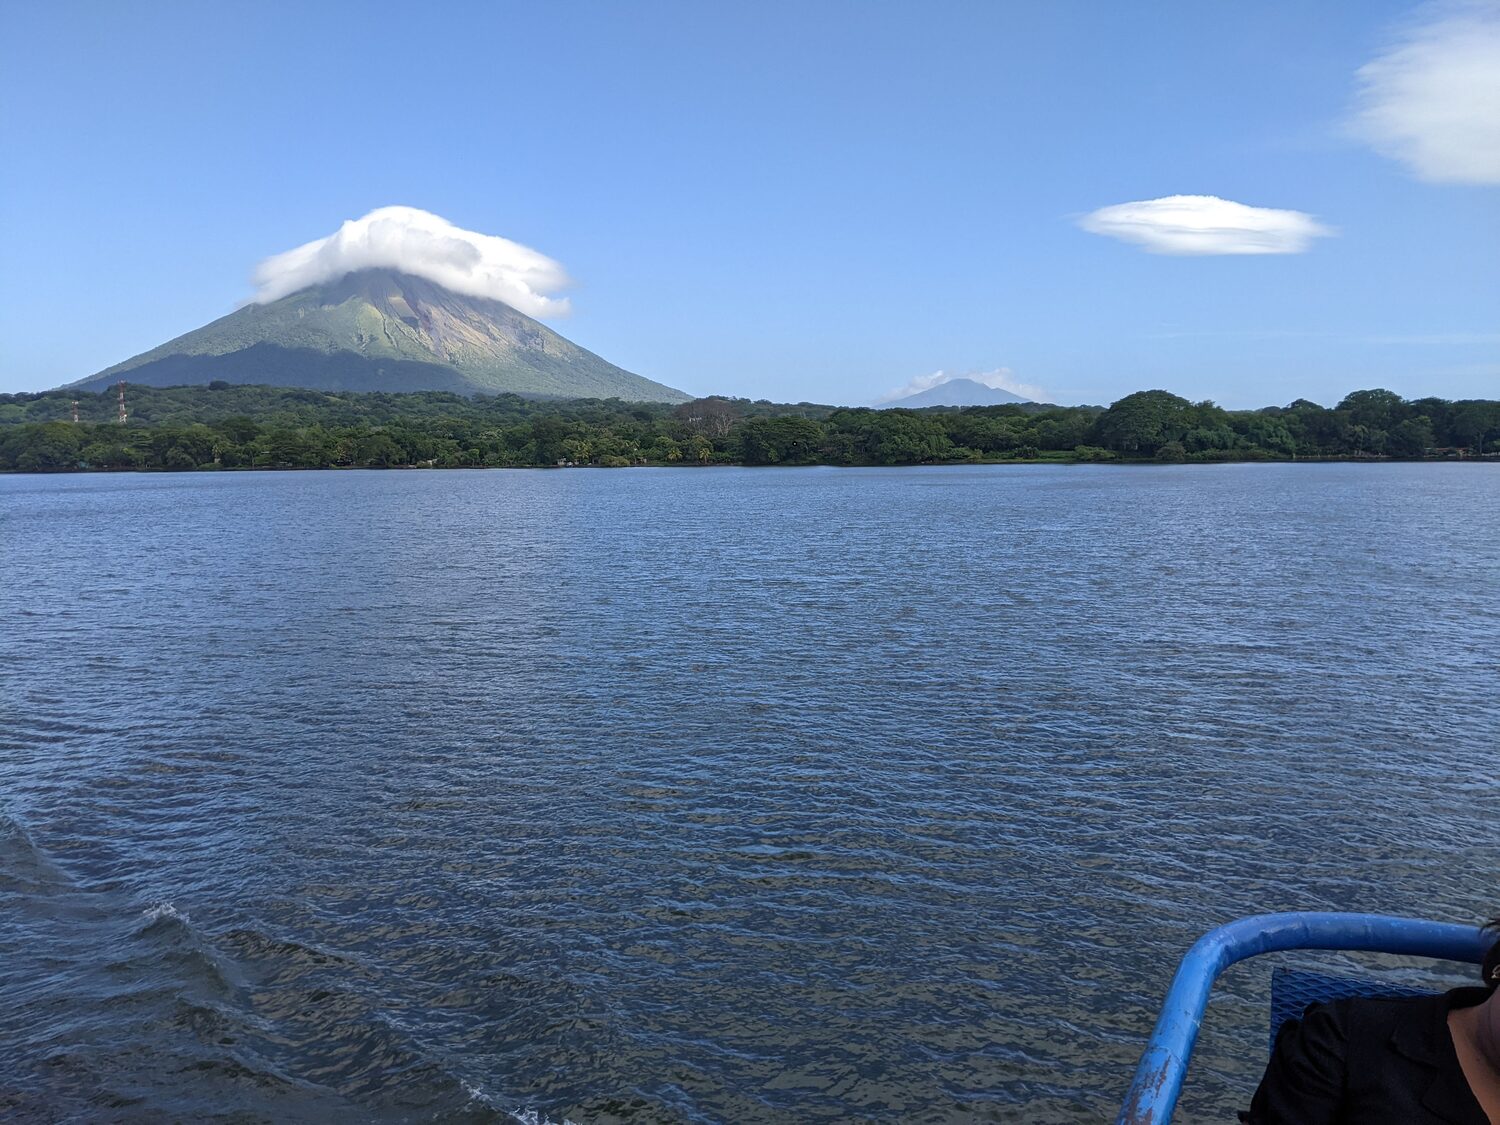 Volcan de concepción - Ometepe island